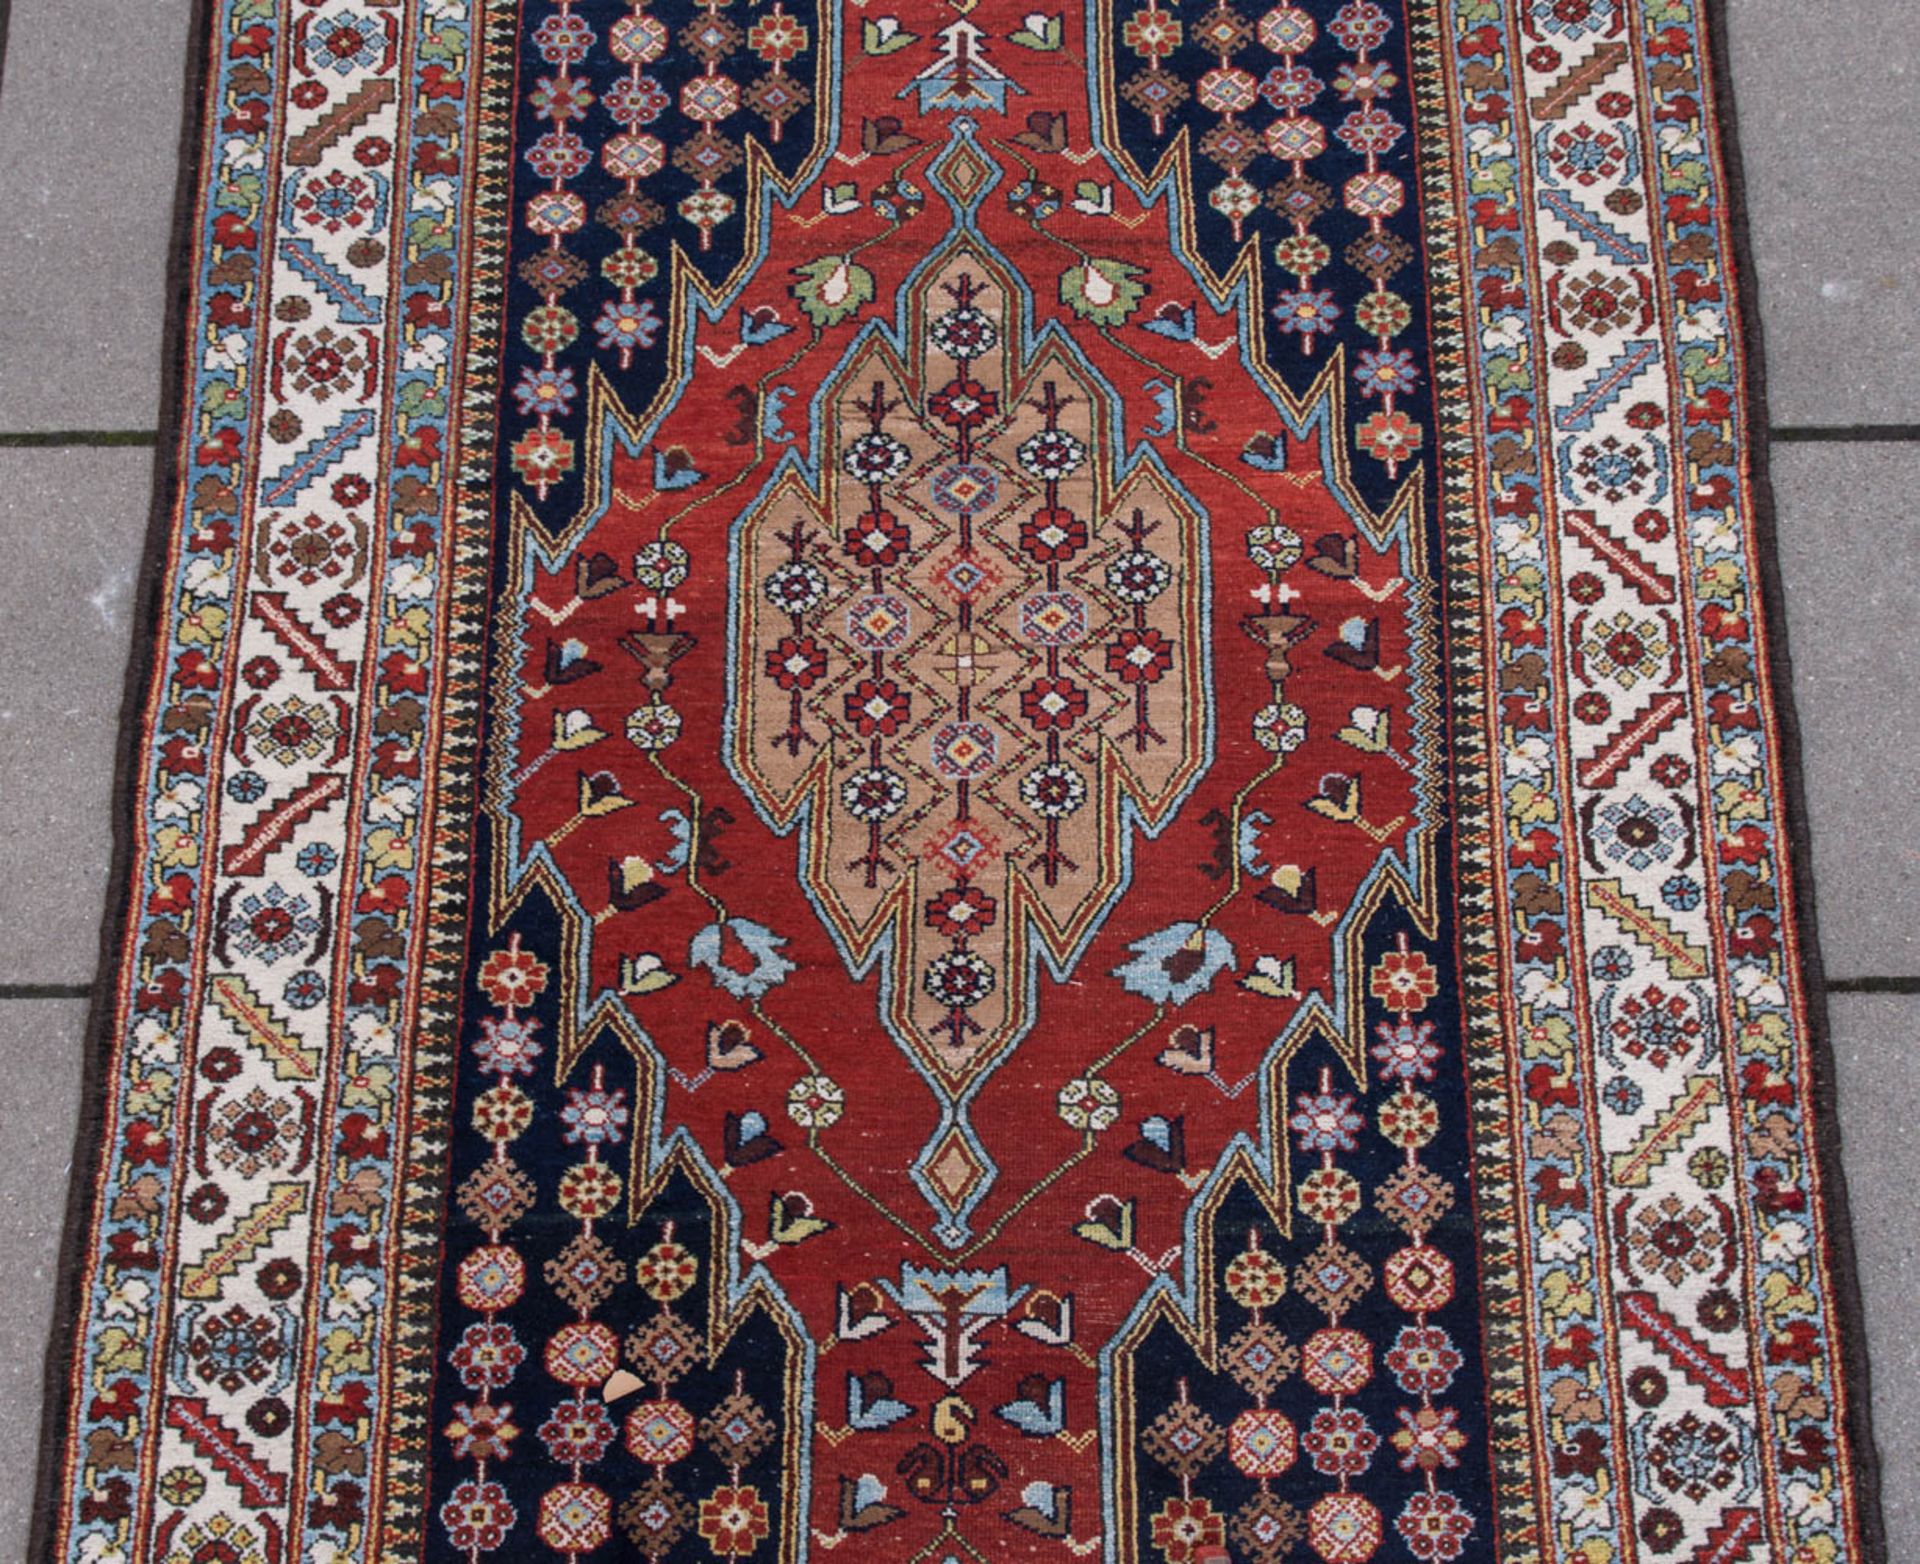 Läufer Teppich, Baumwolle.Ornamenrale und florale Muster.420 x 150 cm. - Image 4 of 8